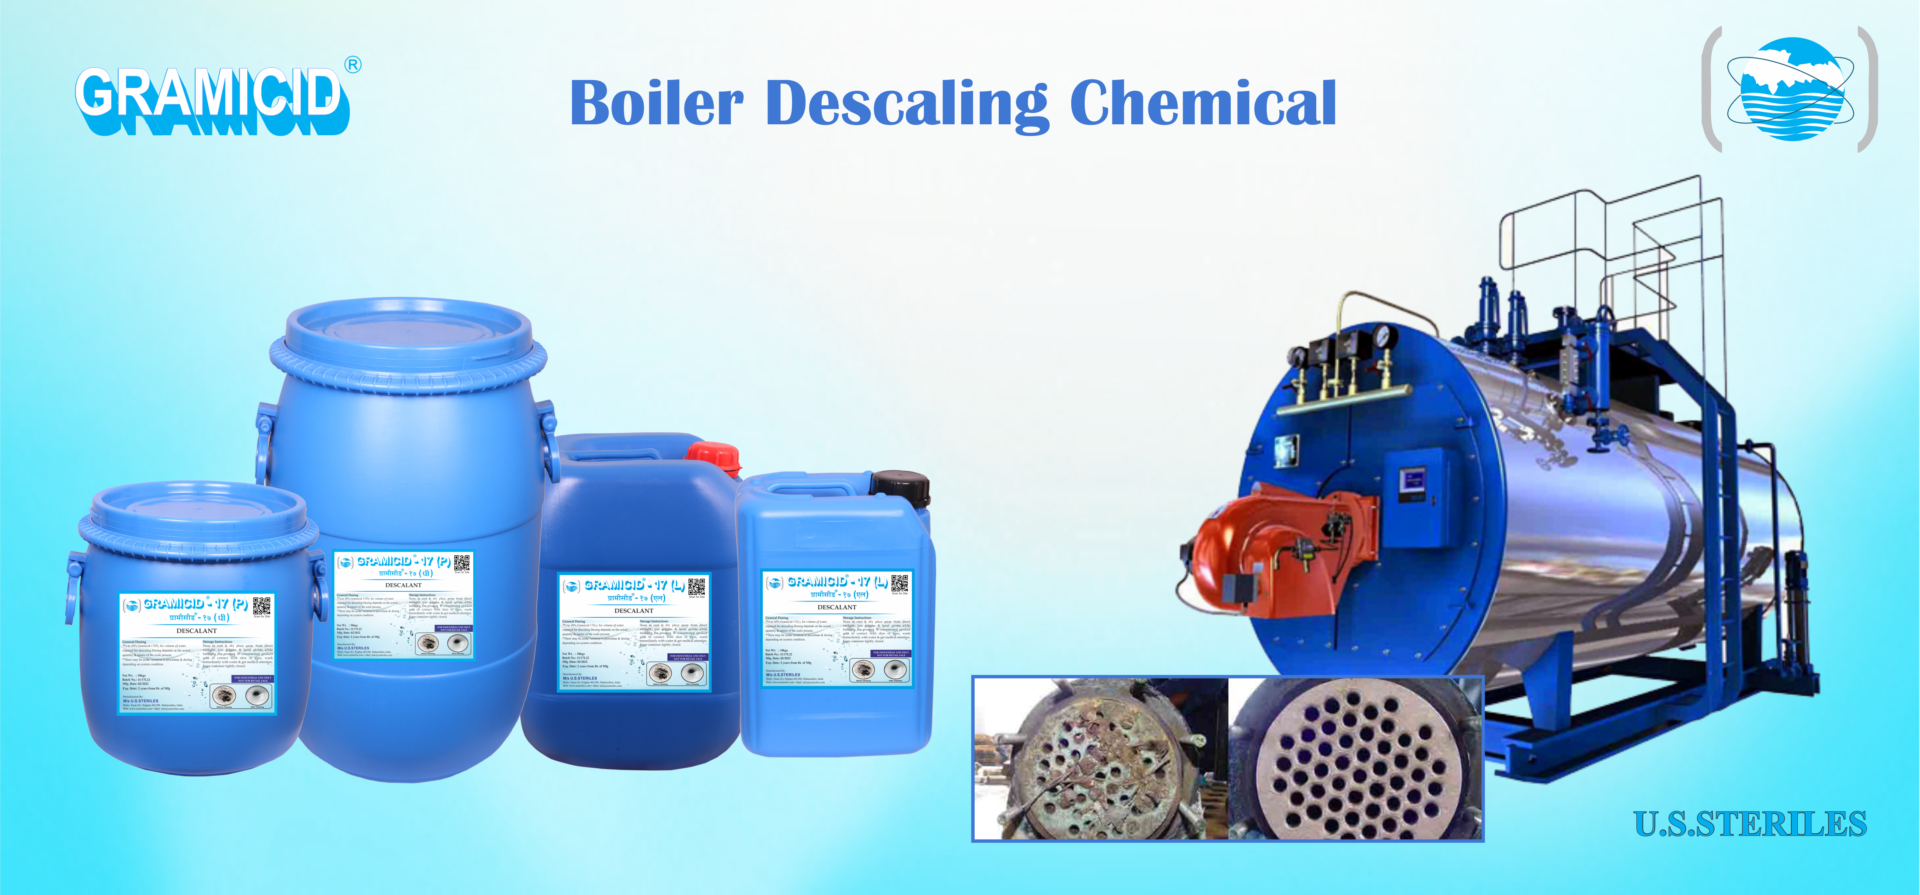 Boiler Descaling Chemical Manufacturer